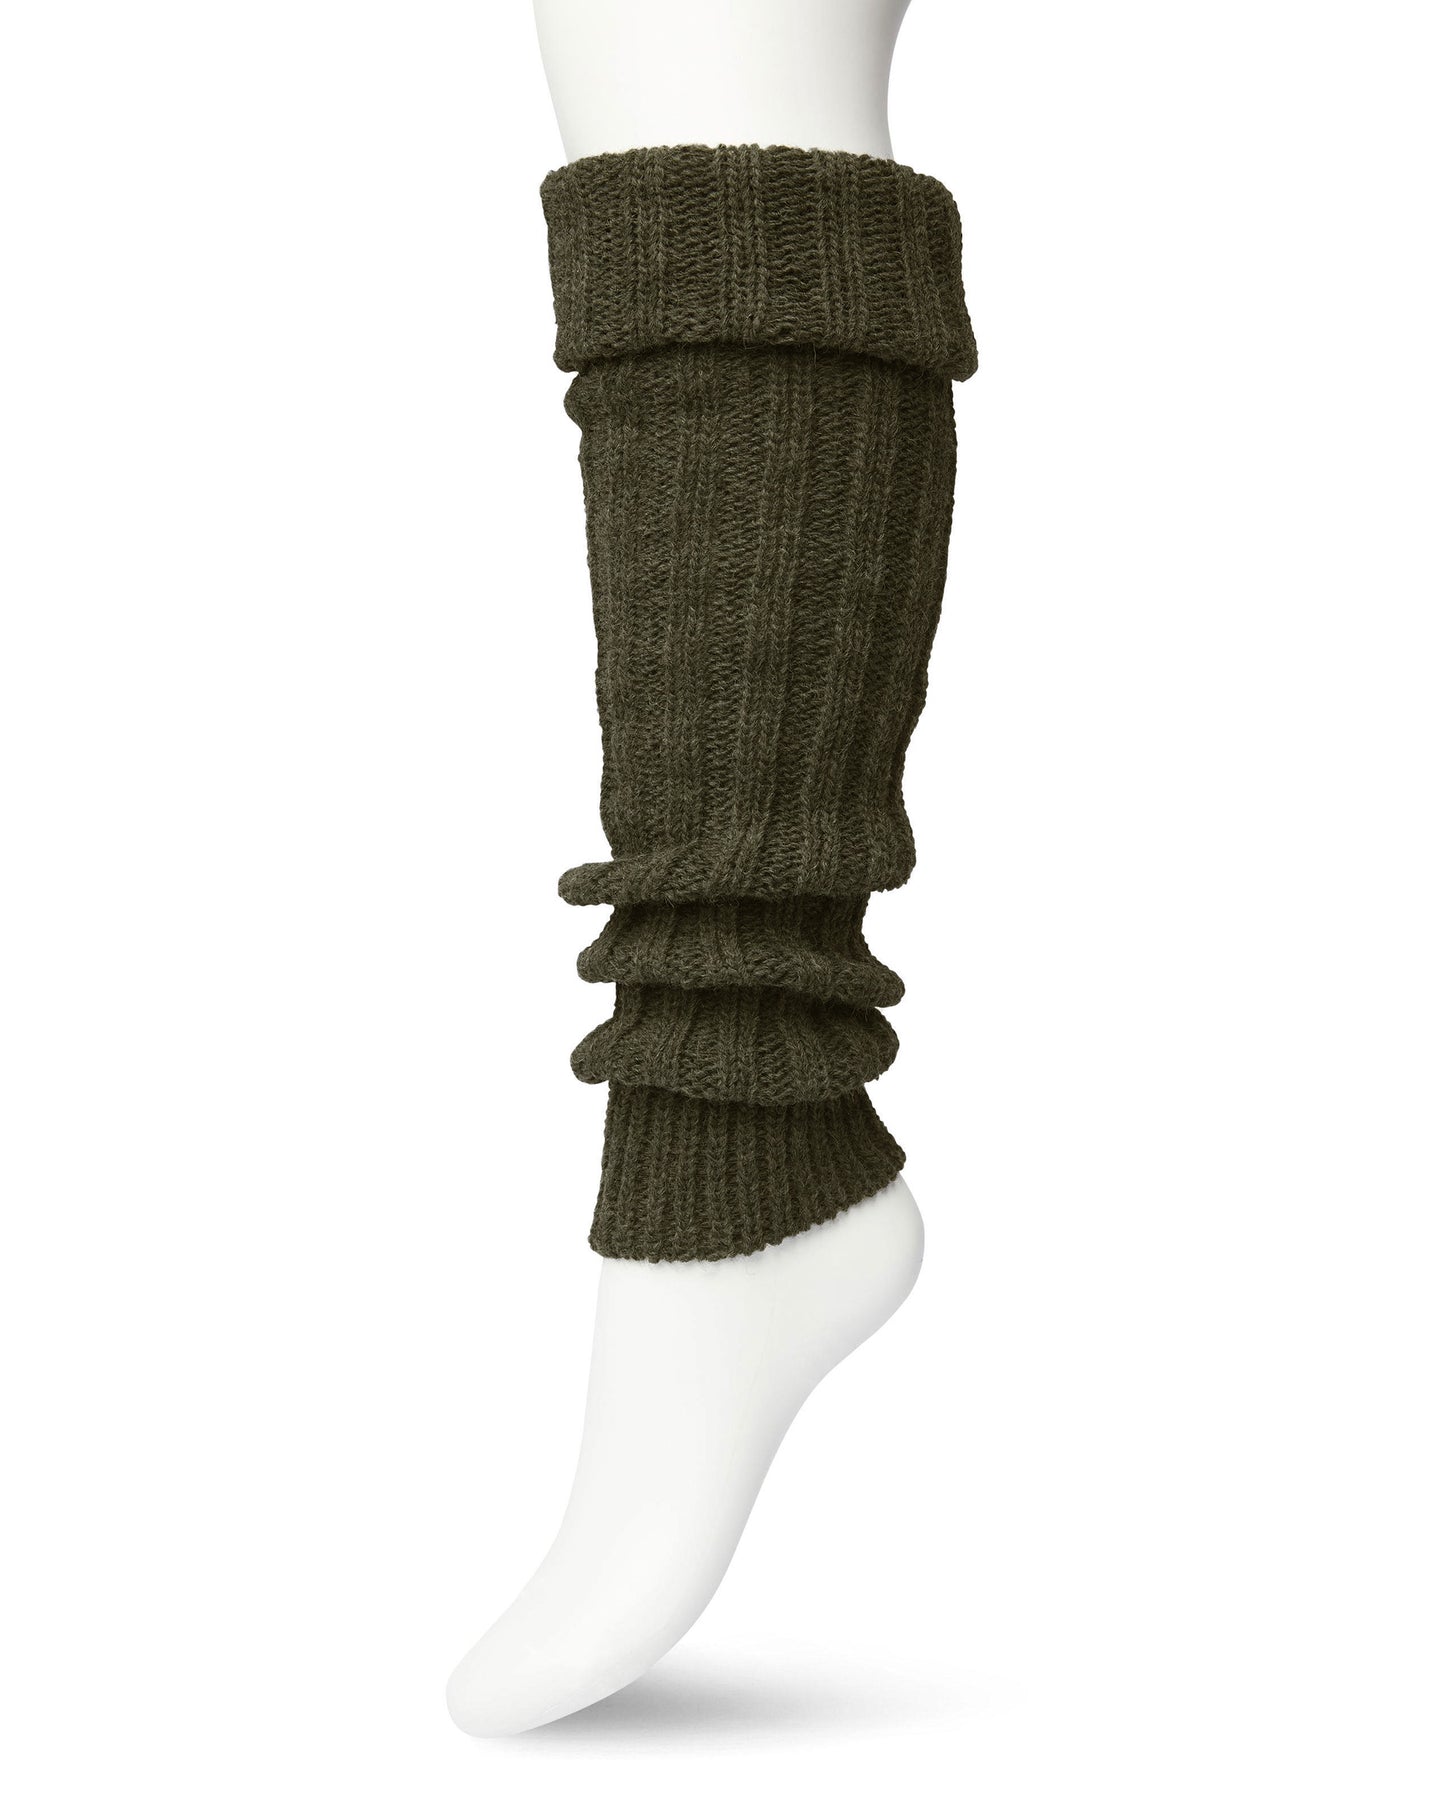 Bonnie Doon Sleever/Legwarmer BE021766 - khaki olive green wool mix chunky knitted leg warmers